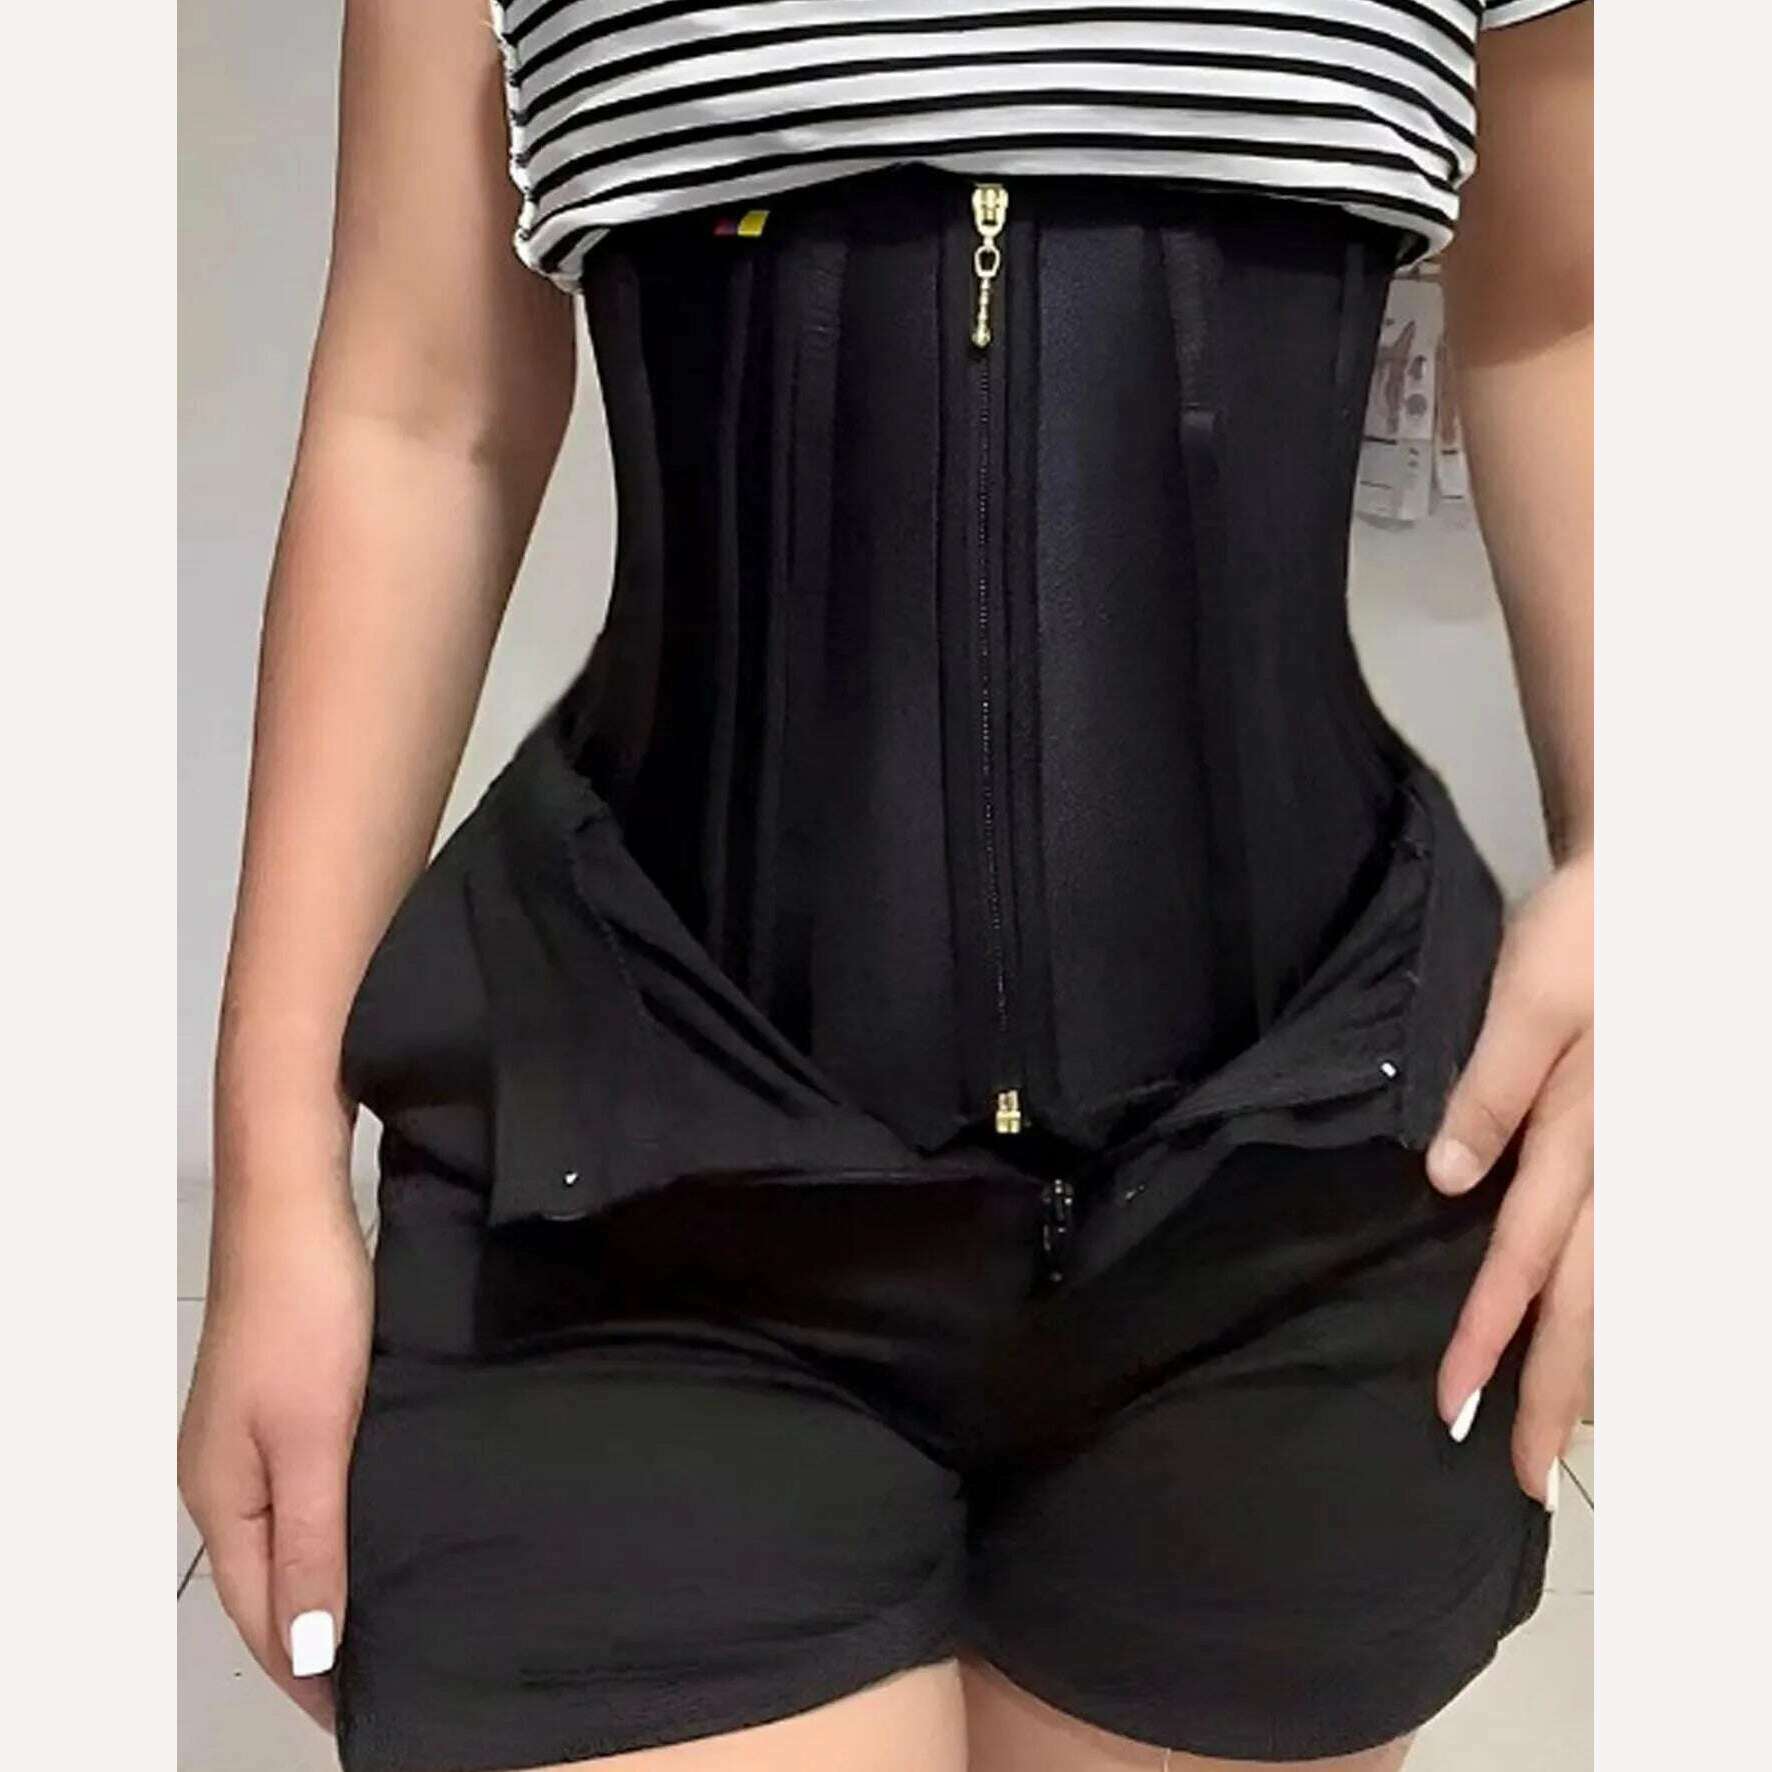 KIMLUD, Waist Trainer Belly Slimming Belt Body Shaper Modeling Strap Fajas Colombianas Shaping Corset Binder Shapewear for Women, black / XXL, KIMLUD Women's Clothes